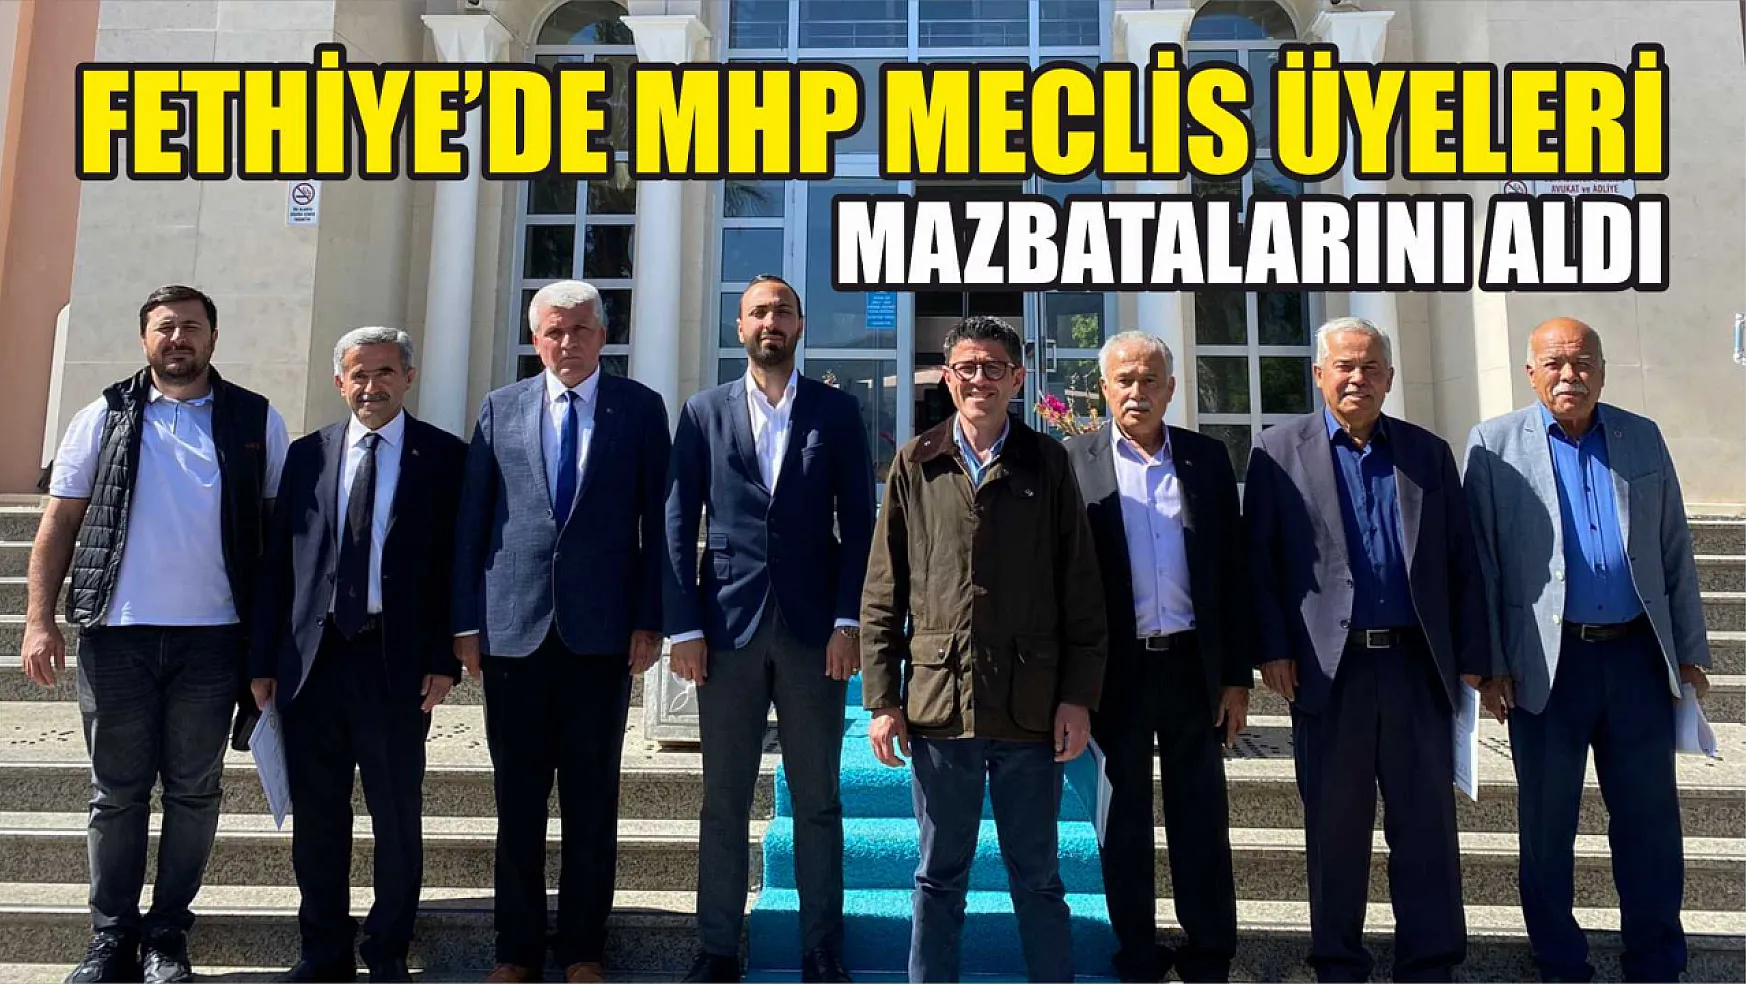 Fethiye'de MHP Meclis Üyeleri Mazbatalarını Aldı